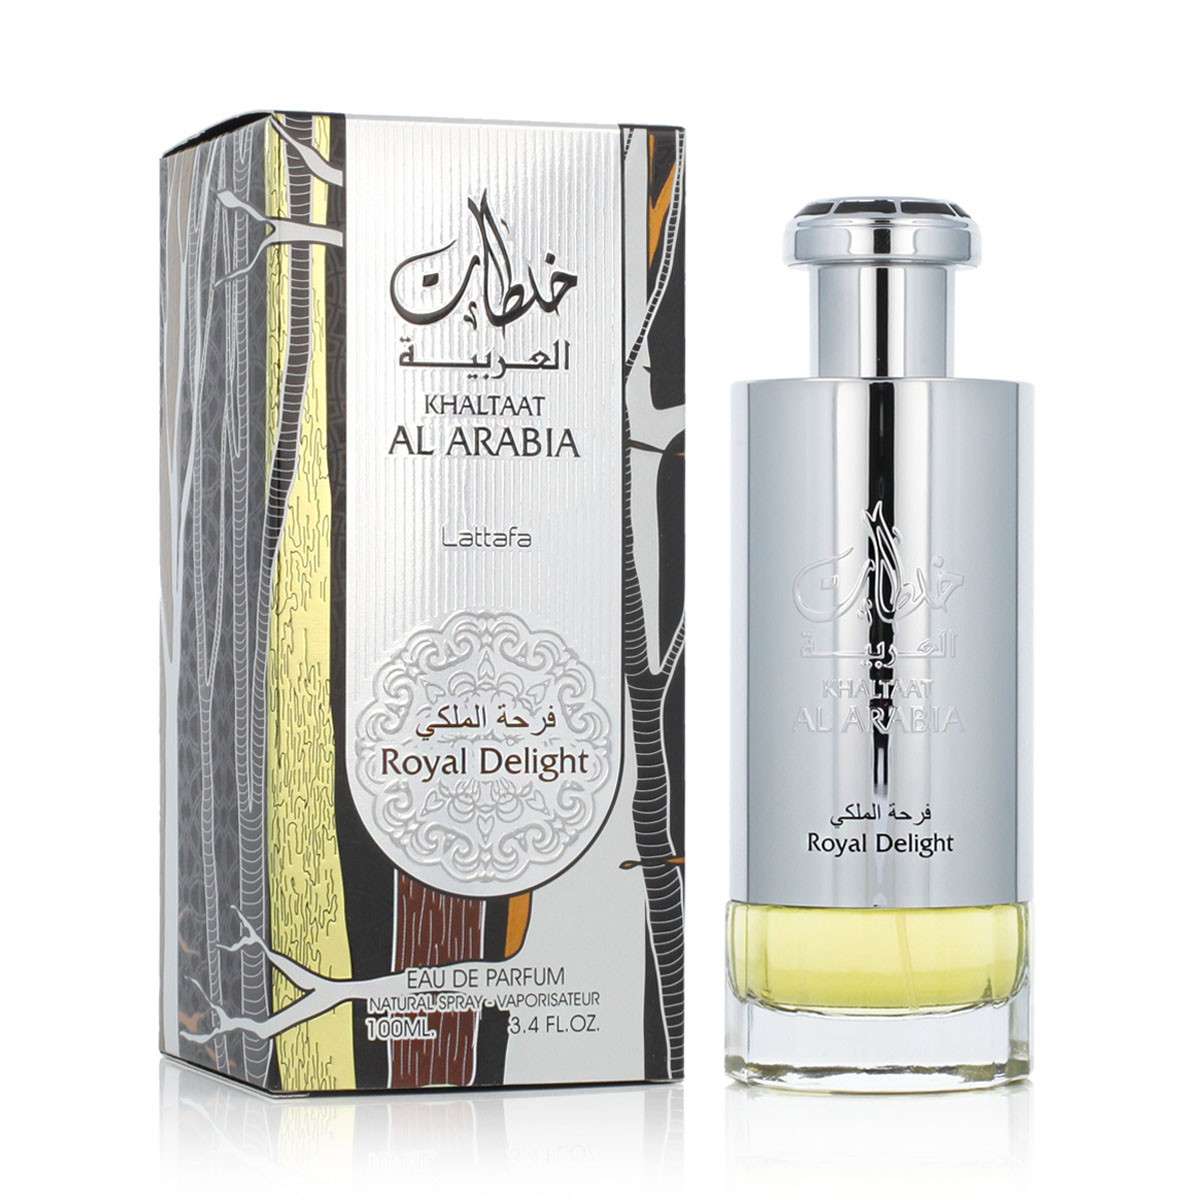 Khaltat Al Arabia Royal Delight(Silver)100ml EDP Men Spray